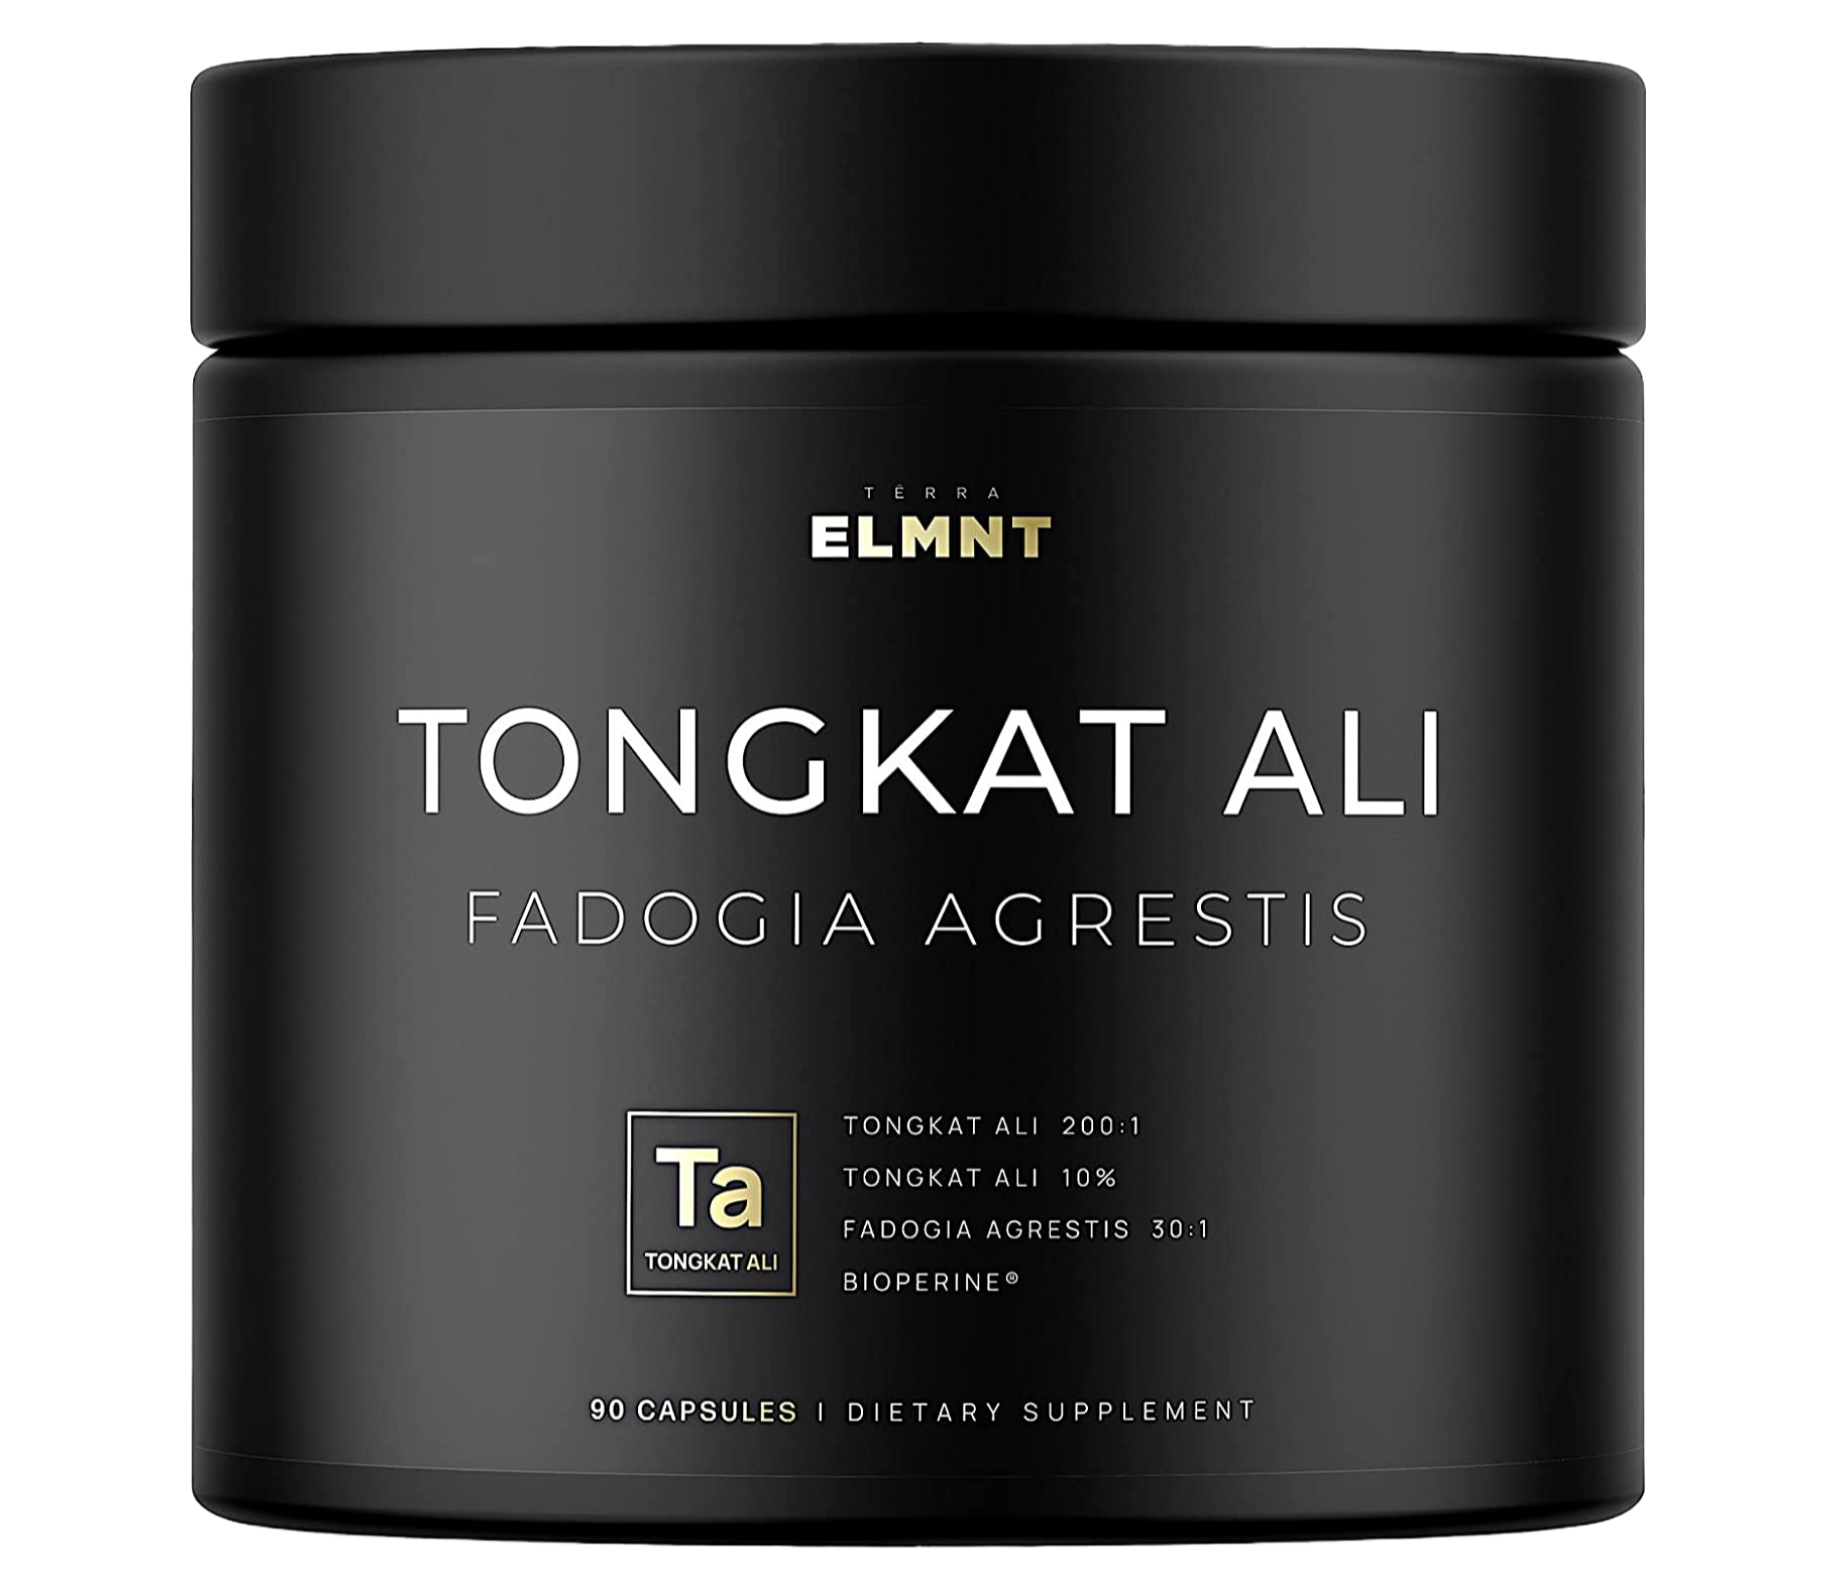 ELMNT Tongkat Ali